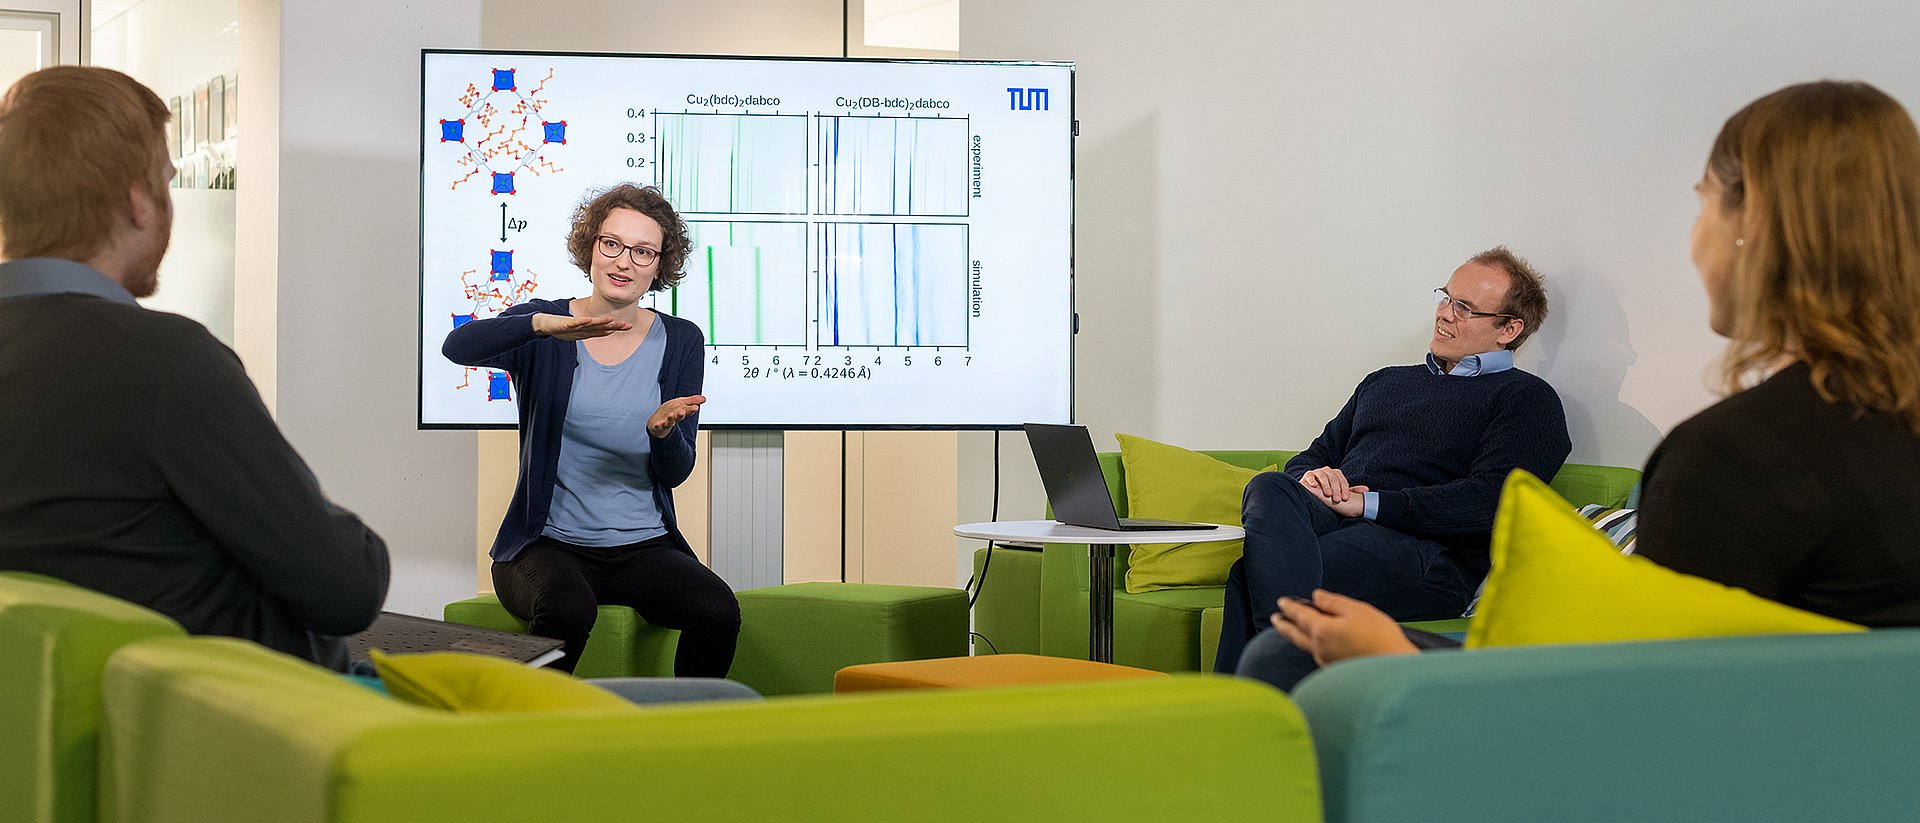 Erstautorin Pia Vervoorts diskutiert mit Kollegen die Ergebnisse von Experiment und Simulation. (Bild: A. Eckert / TUM)